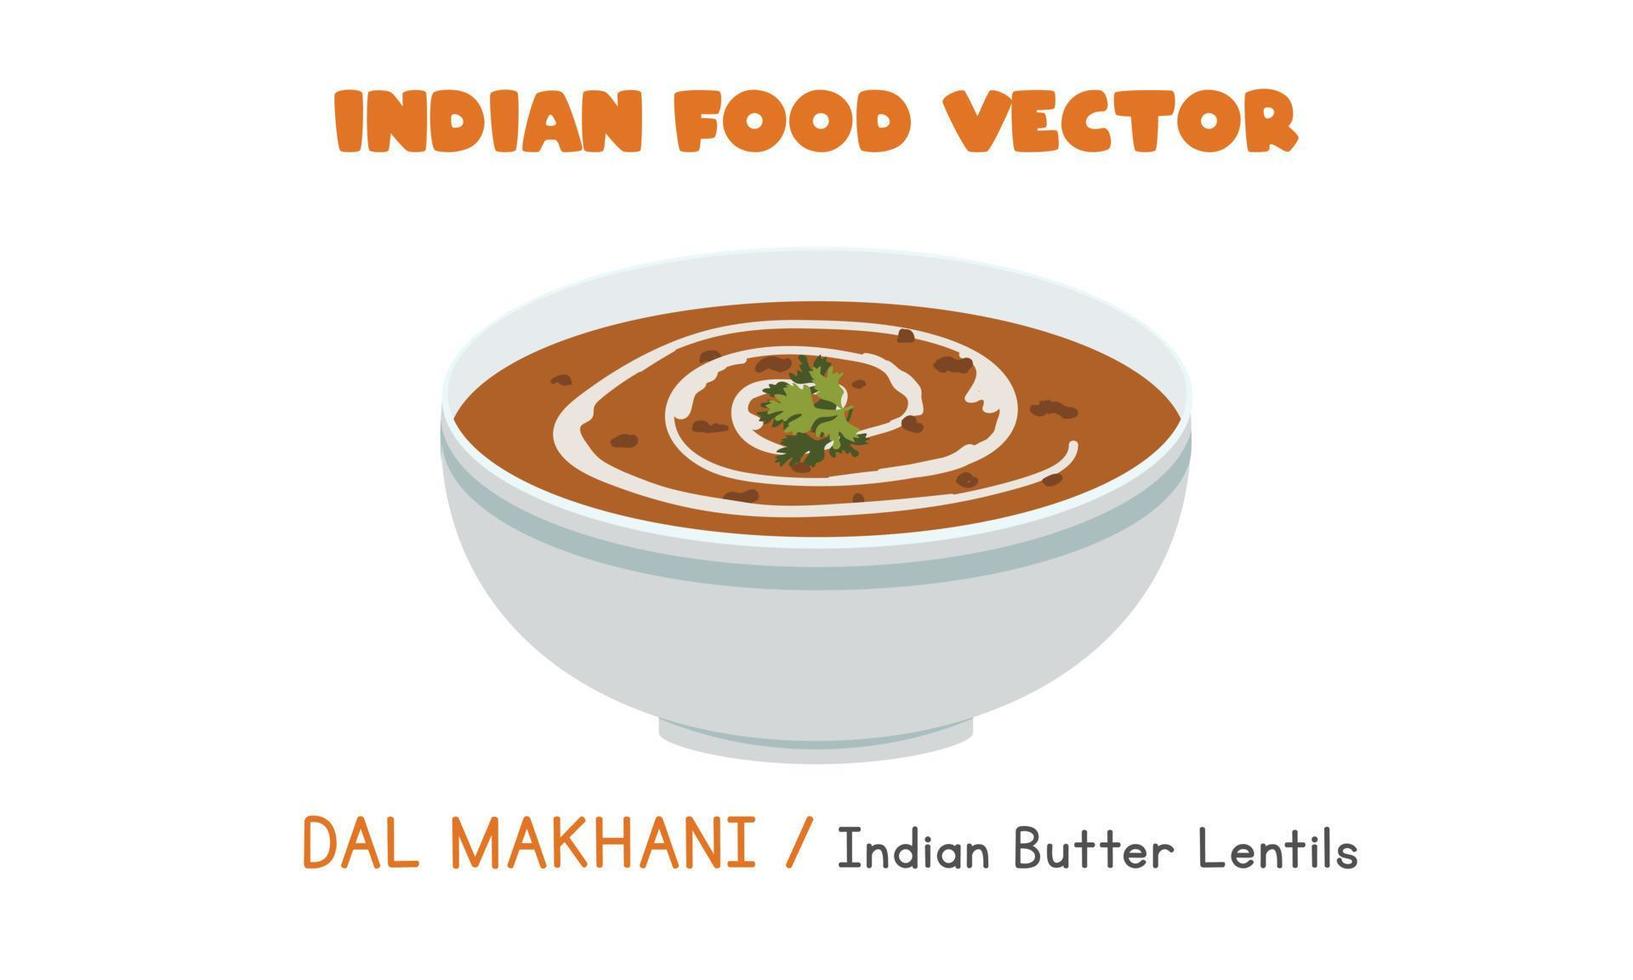 indisches dal makhani - flache vektorillustration der indischen butterlinsen lokalisiert auf weißem hintergrund. Dal Makhani-Clipart-Cartoon. asiatisches Essen. indische Küche. Indisches Essen vektor